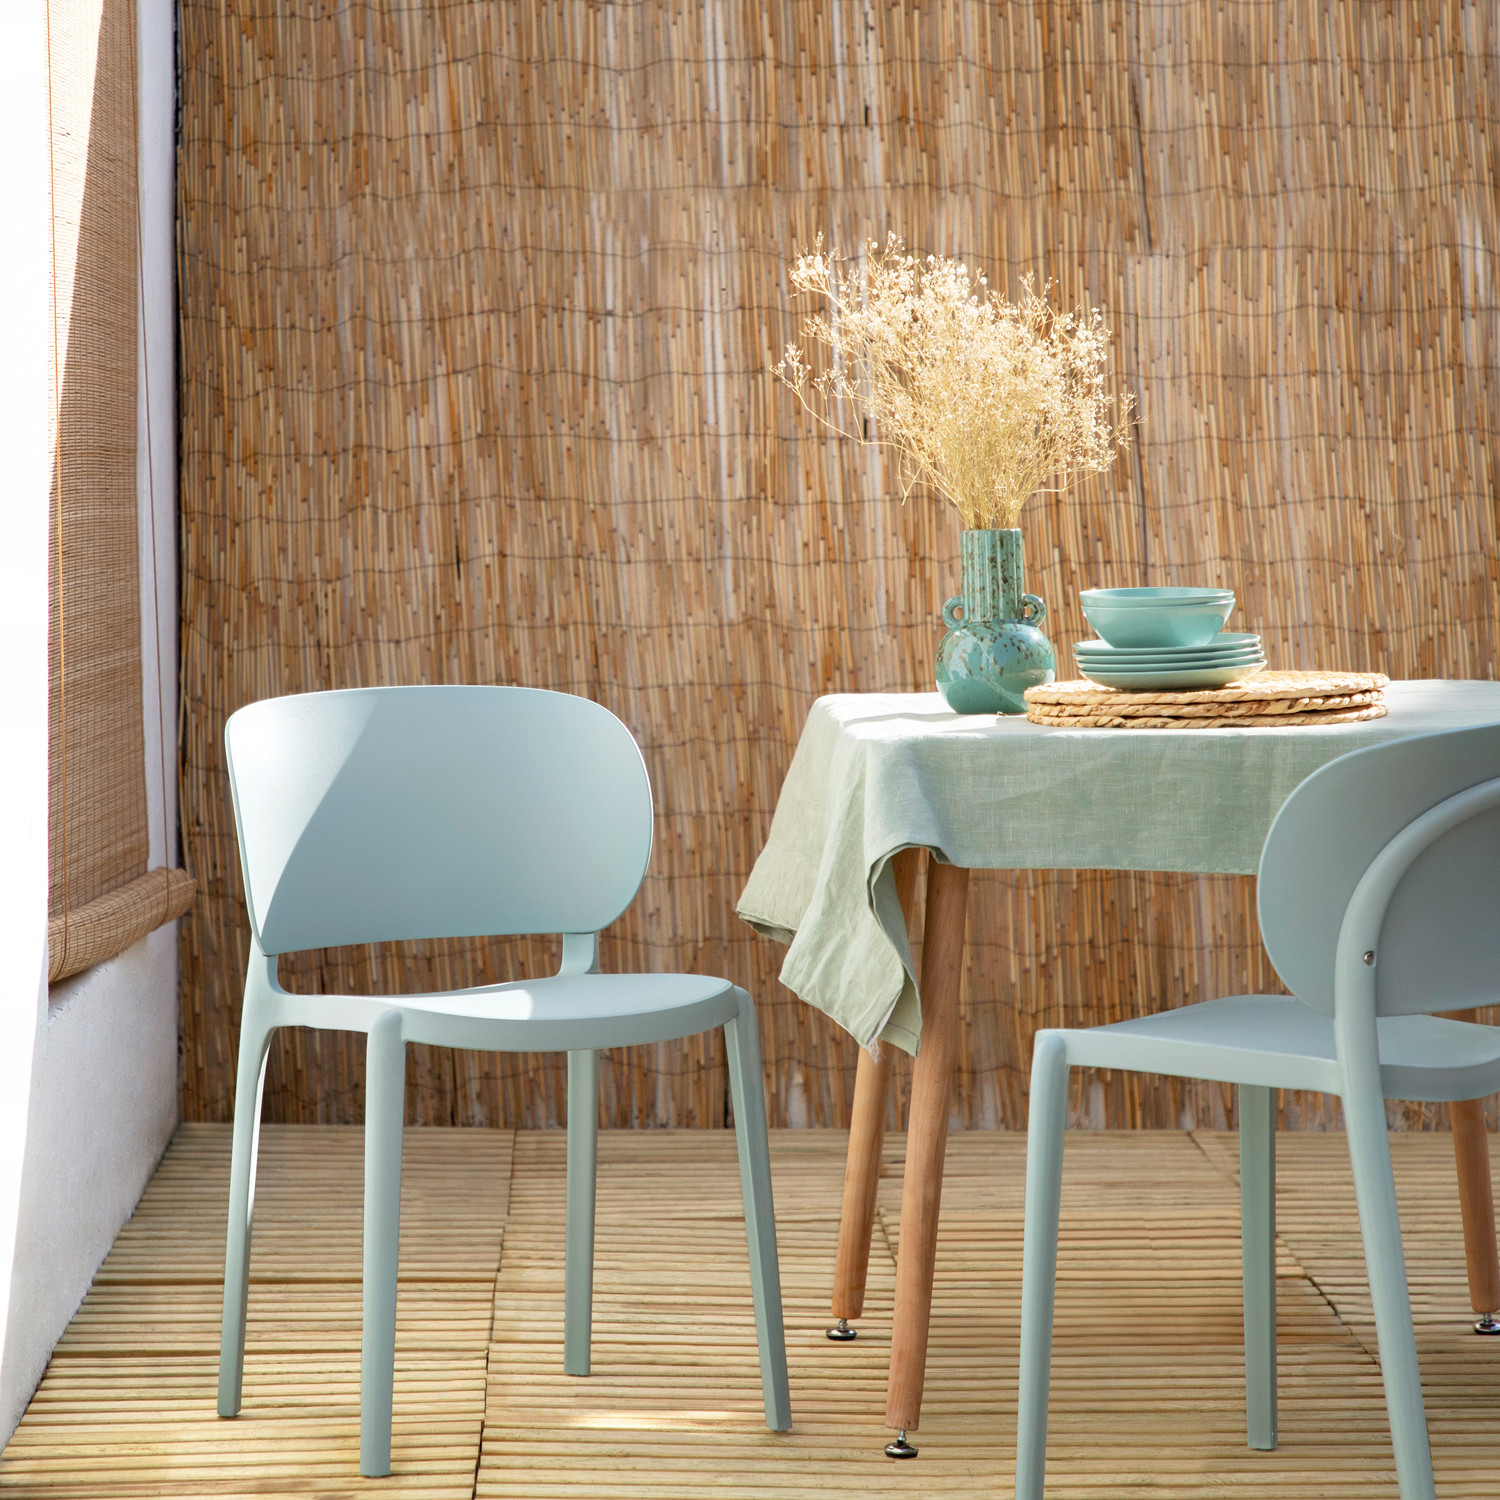 La silla de comedor Jana es un diseño elegante con líneas estilizadas de aire vintage fabricada en polipropileno